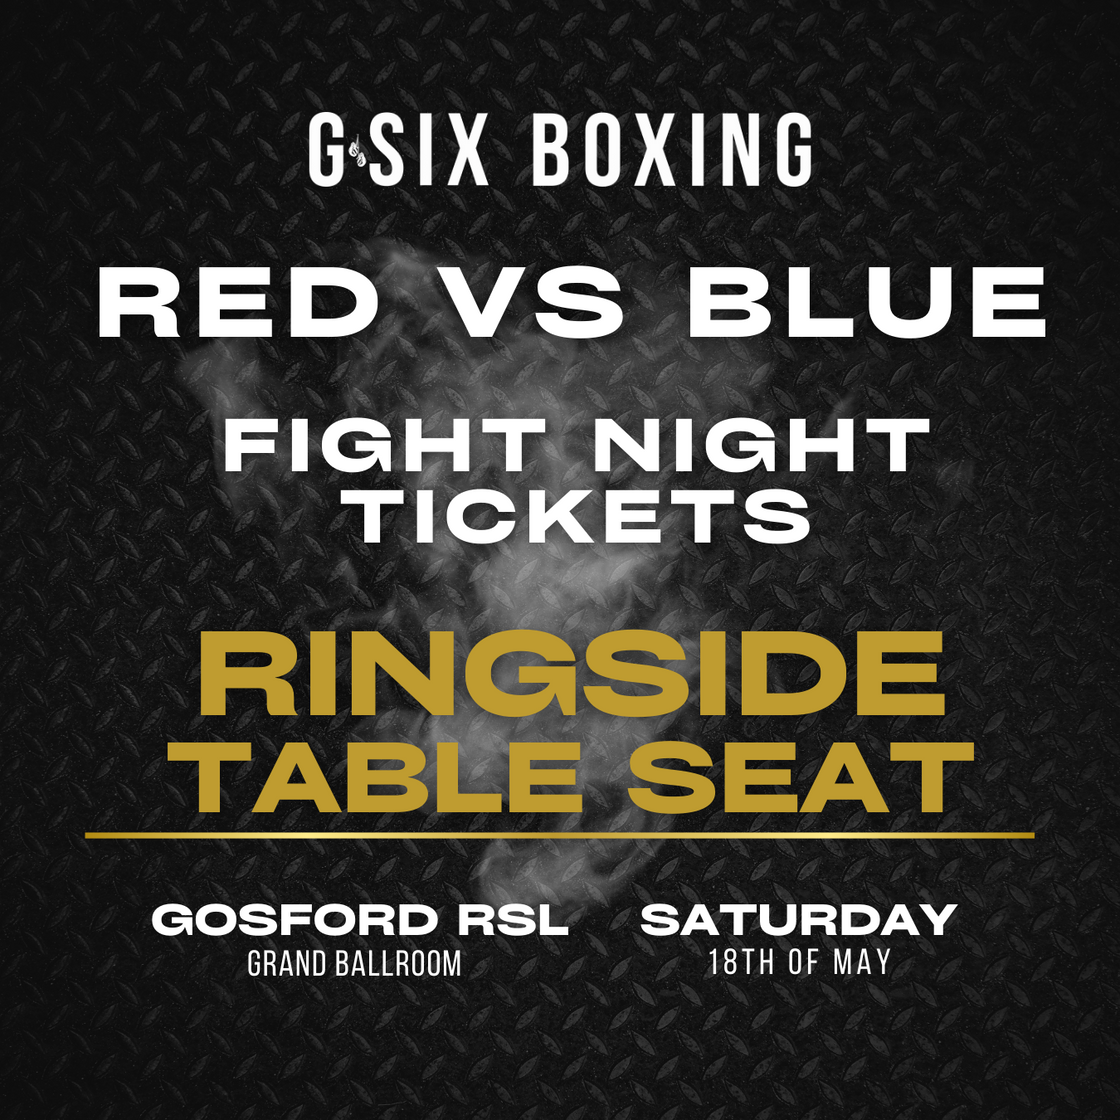 RVB 16 Fight Night Ticket- Ringside Table Ticket